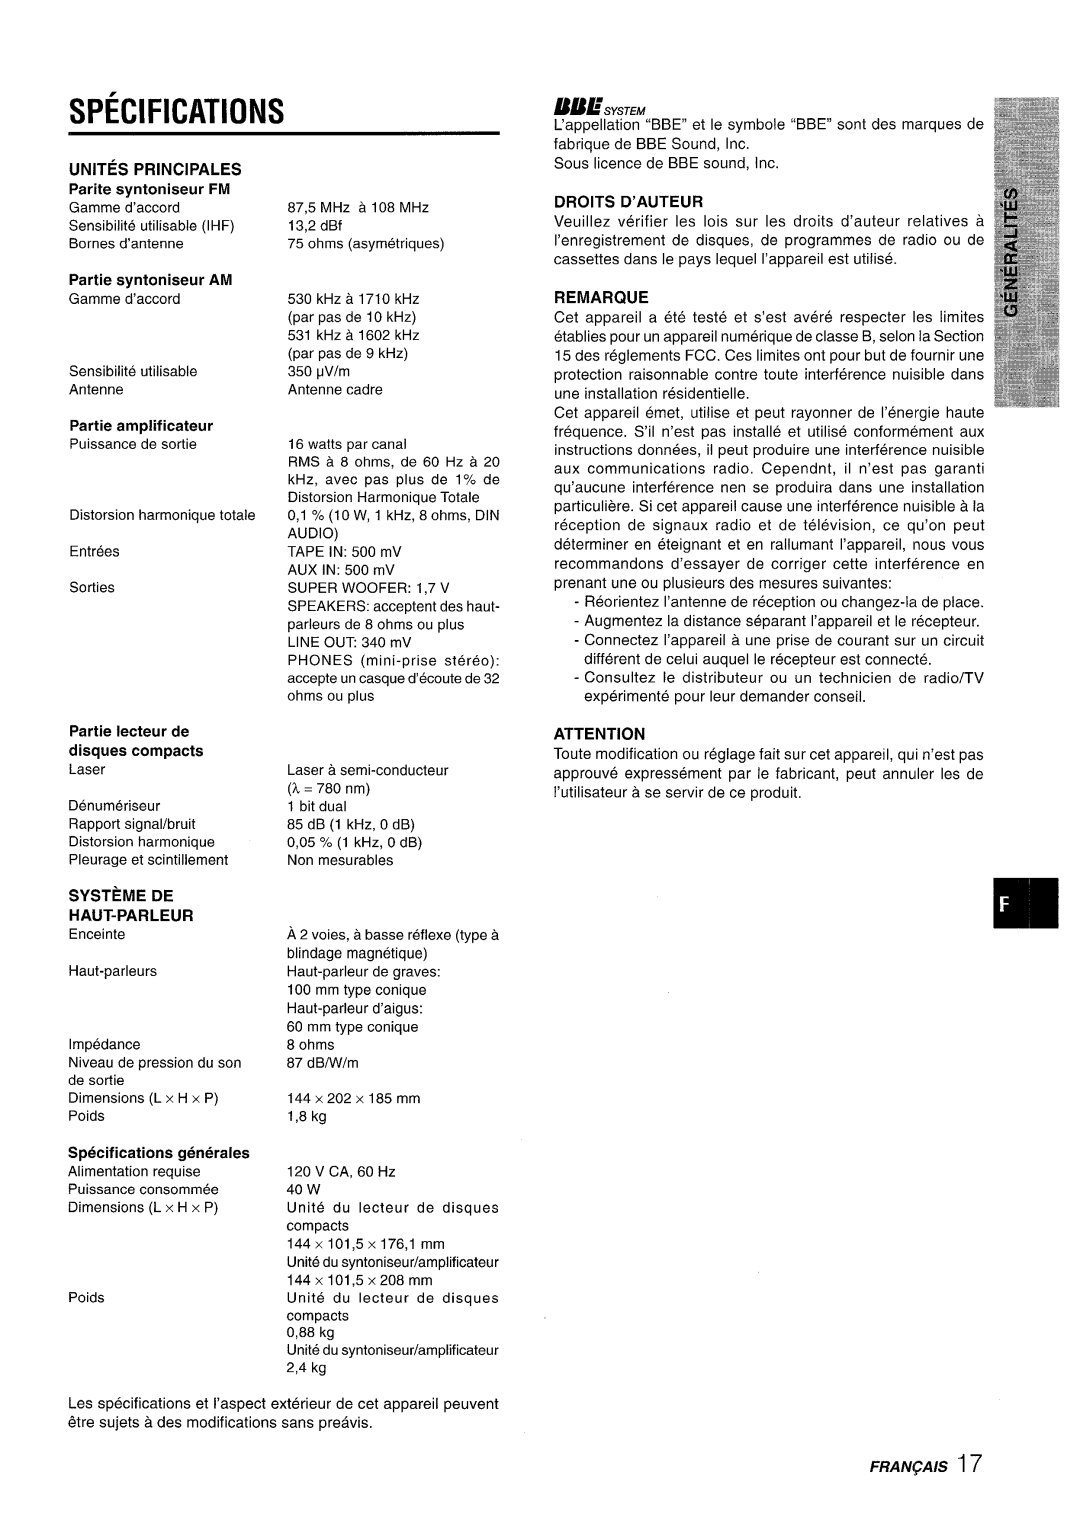 Aiwa XR-M70 Unites, Parite syntoniseur, Systeme De Haut-Parleur, Specifications generales, 87,5, Partie, amplificateur 